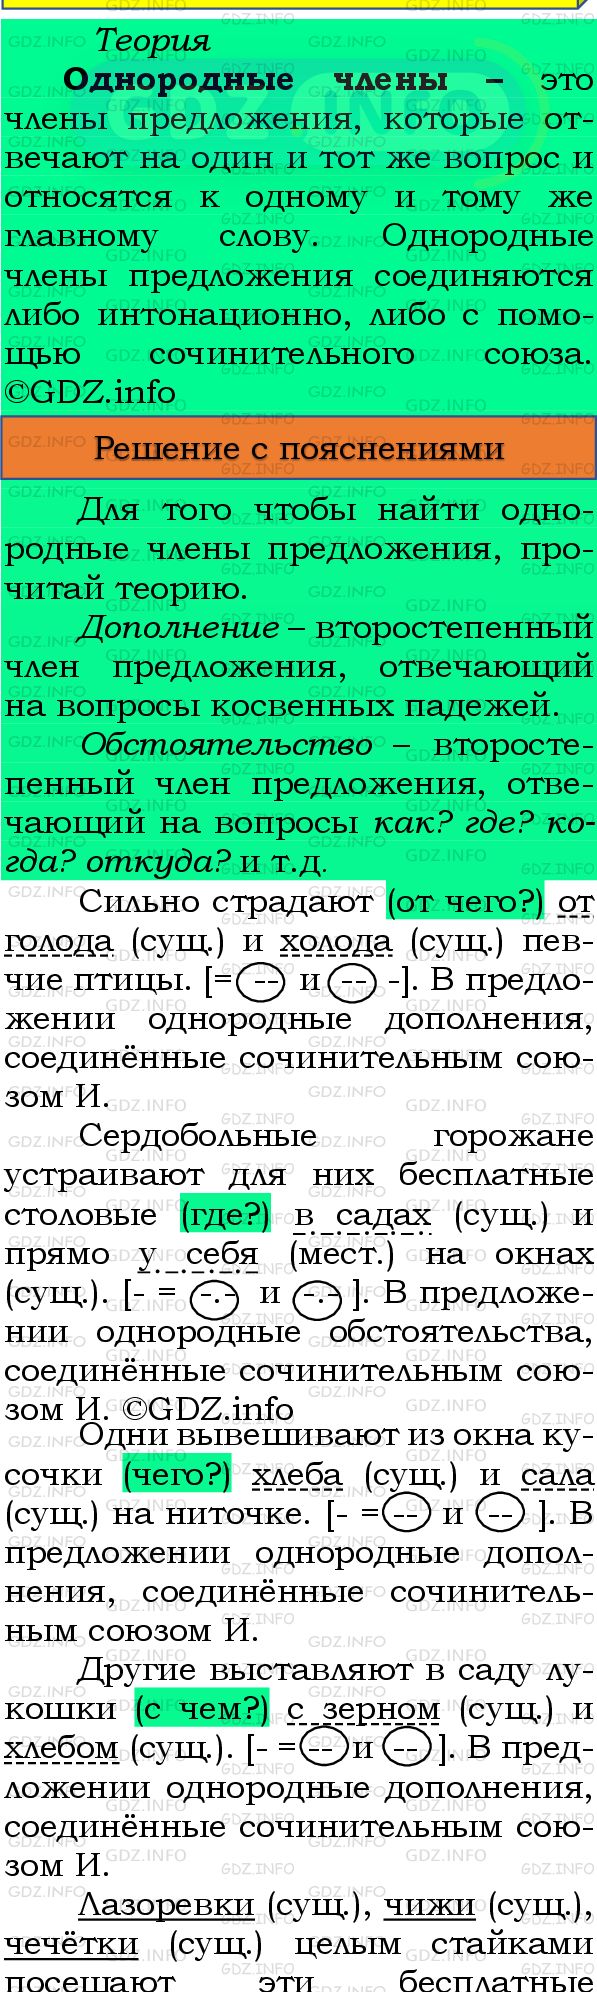 Фото подробного решения: Номер №328 из ГДЗ по Русскому языку 8 класс: Бархударов С.Г.